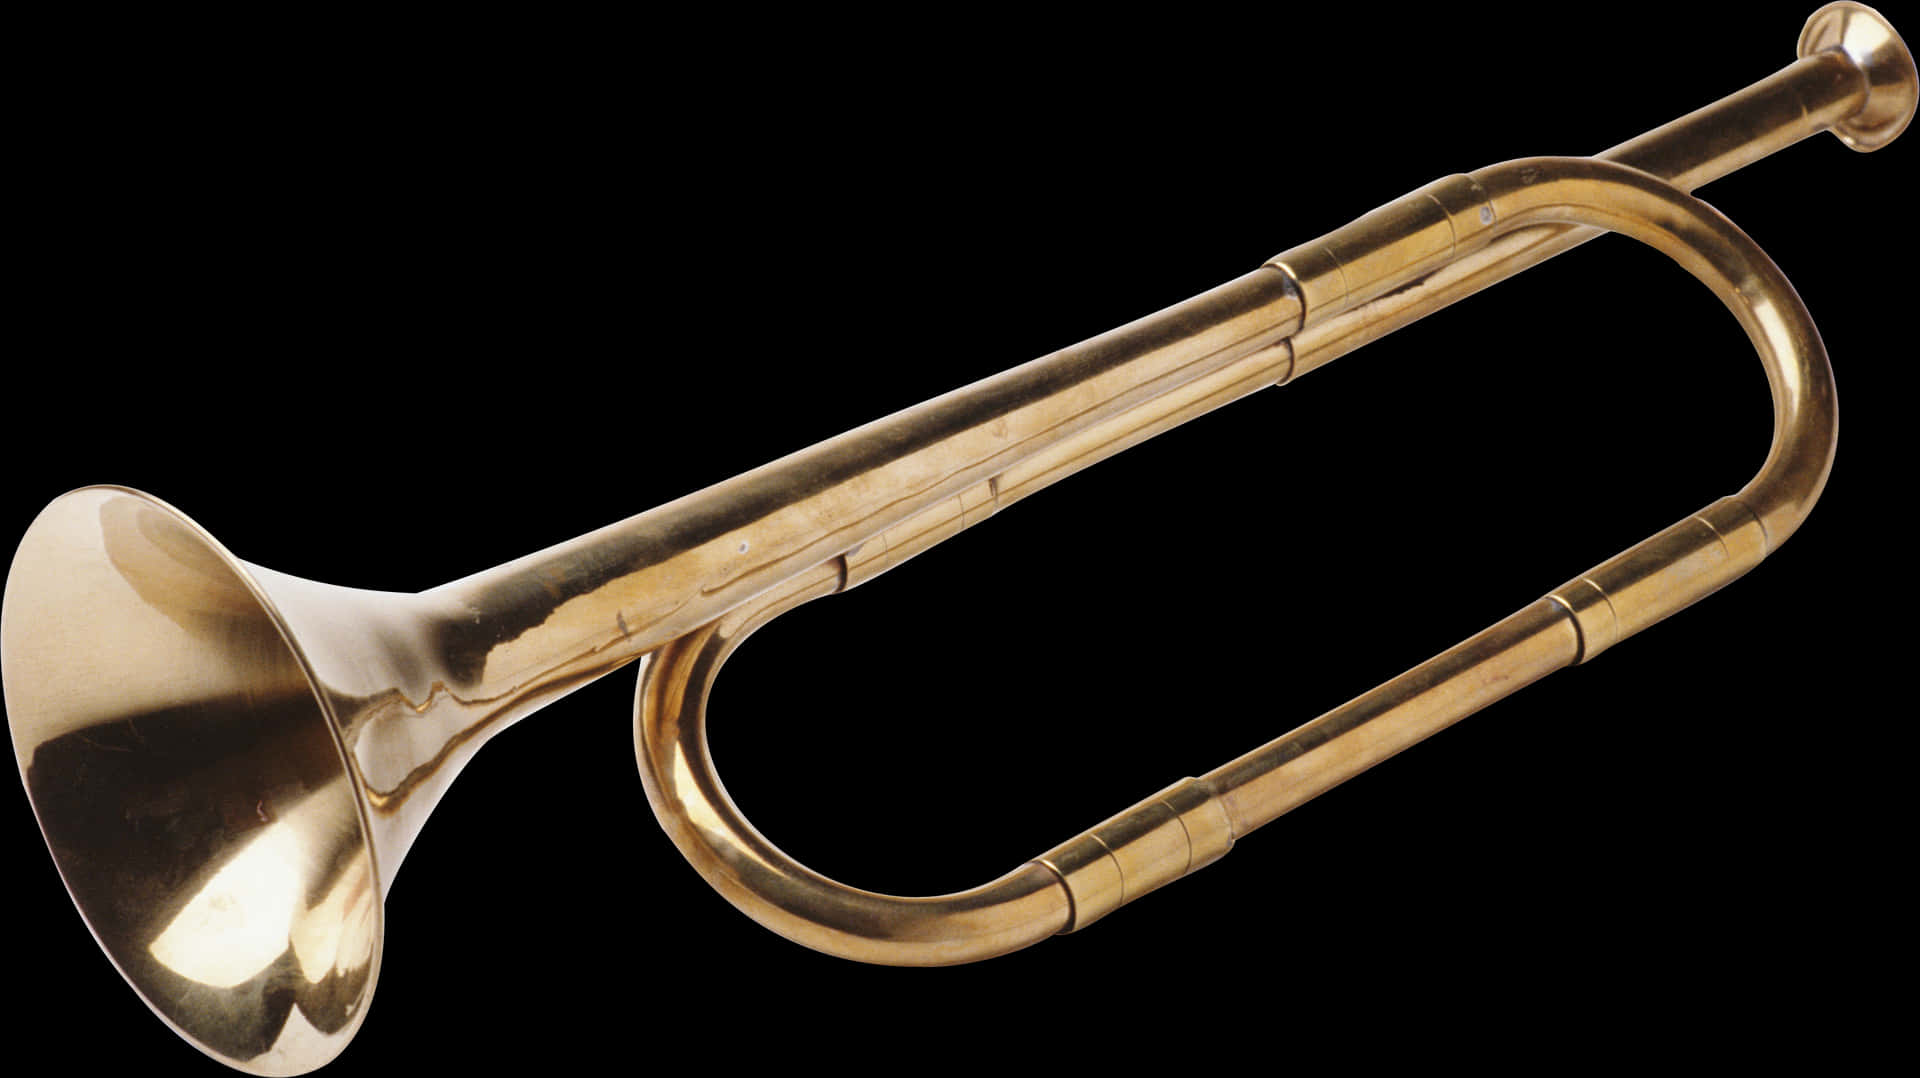 Vintage Brass Trumpet PNG image